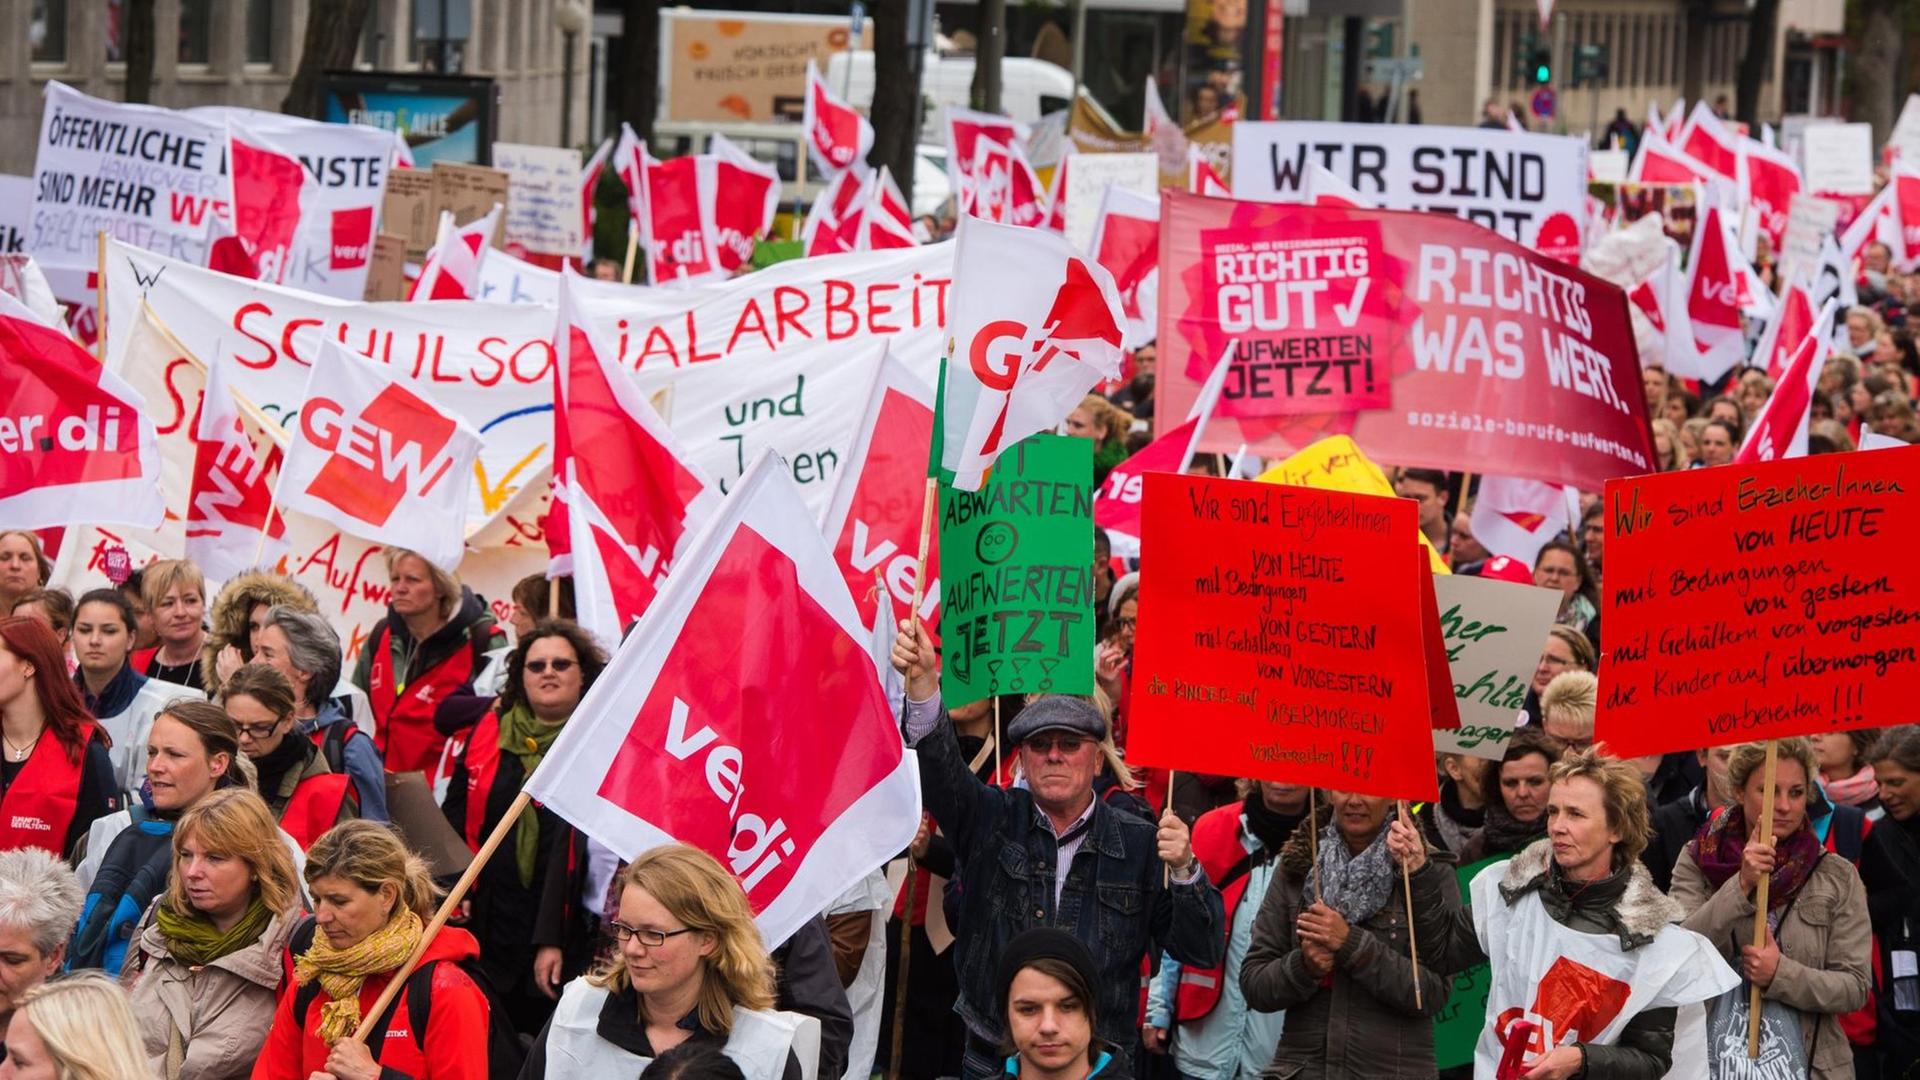 Erzieher halten am 28.05.2015 in Hamburg während einer Demonstration für mehr Lohn und Anerkennung Plakate und Transparente hoch.